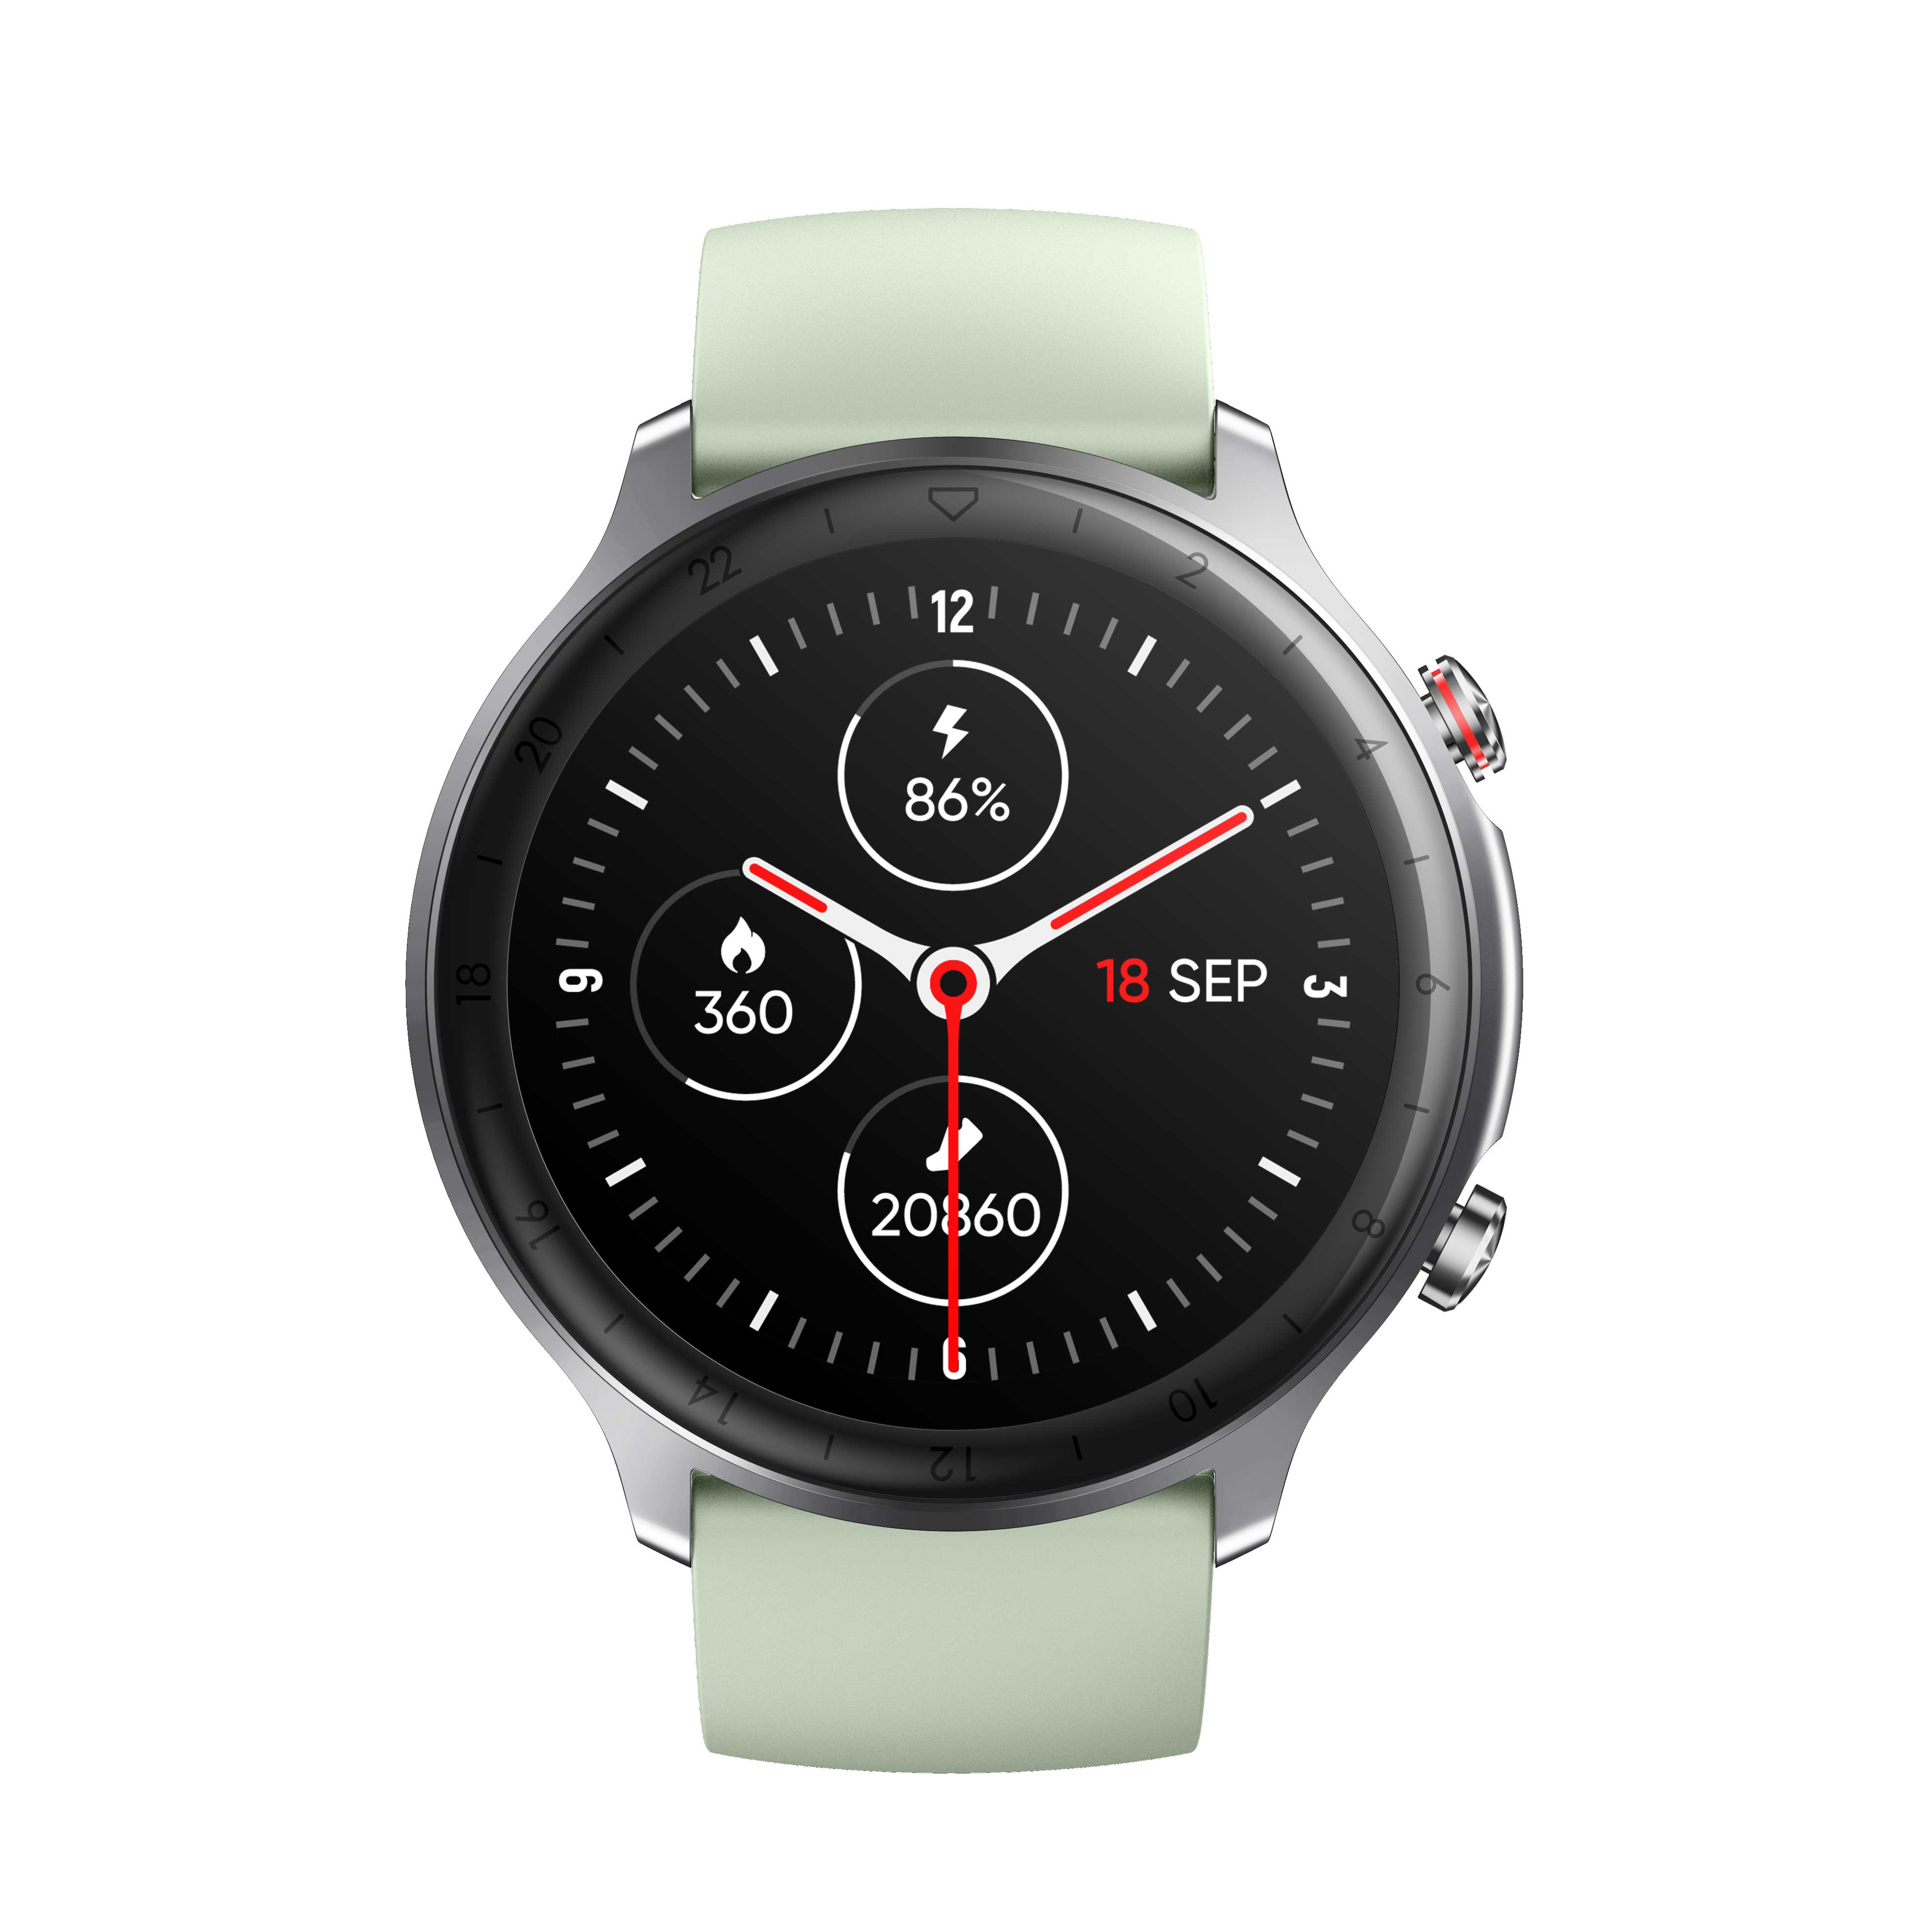 Orologio Smartwatch JMSMART Mod. Target con GPS integrato e display LCD  alta risoluzione Ref. PJS0010N - Time & Co.